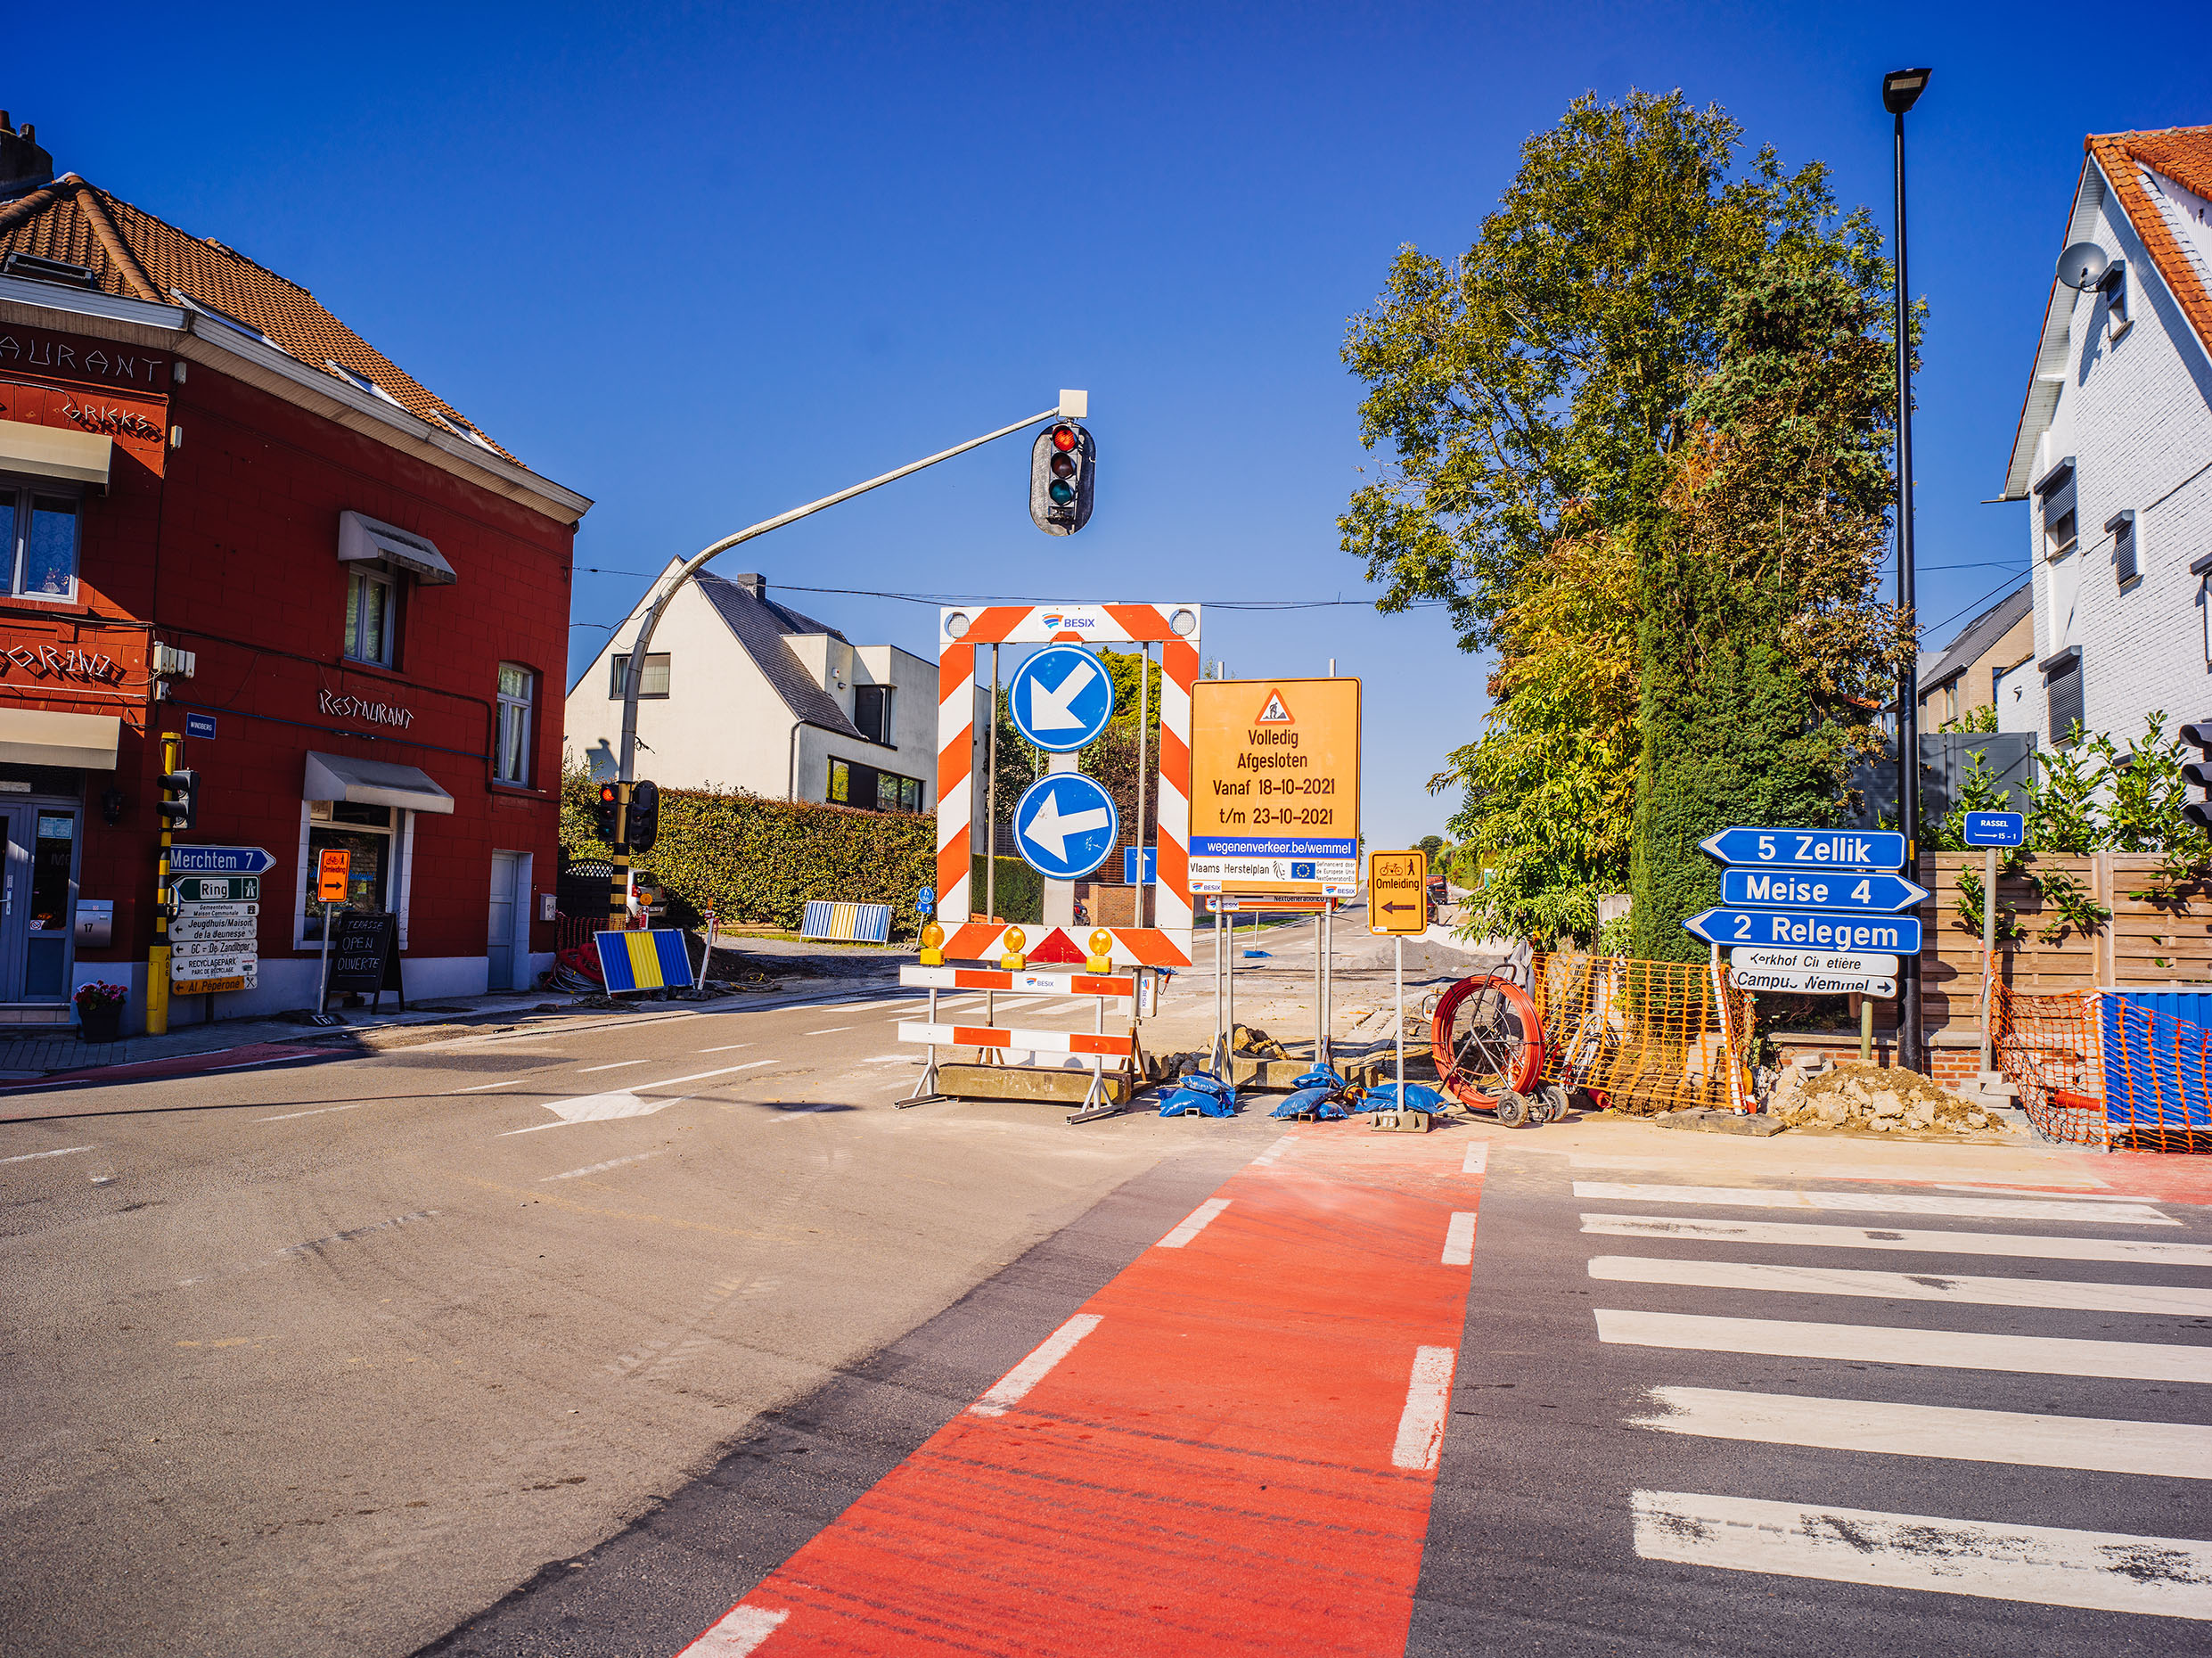 Kruispunt Rassel waar nieuwe verkeerslichten komen tijdens de asfalteringswerken